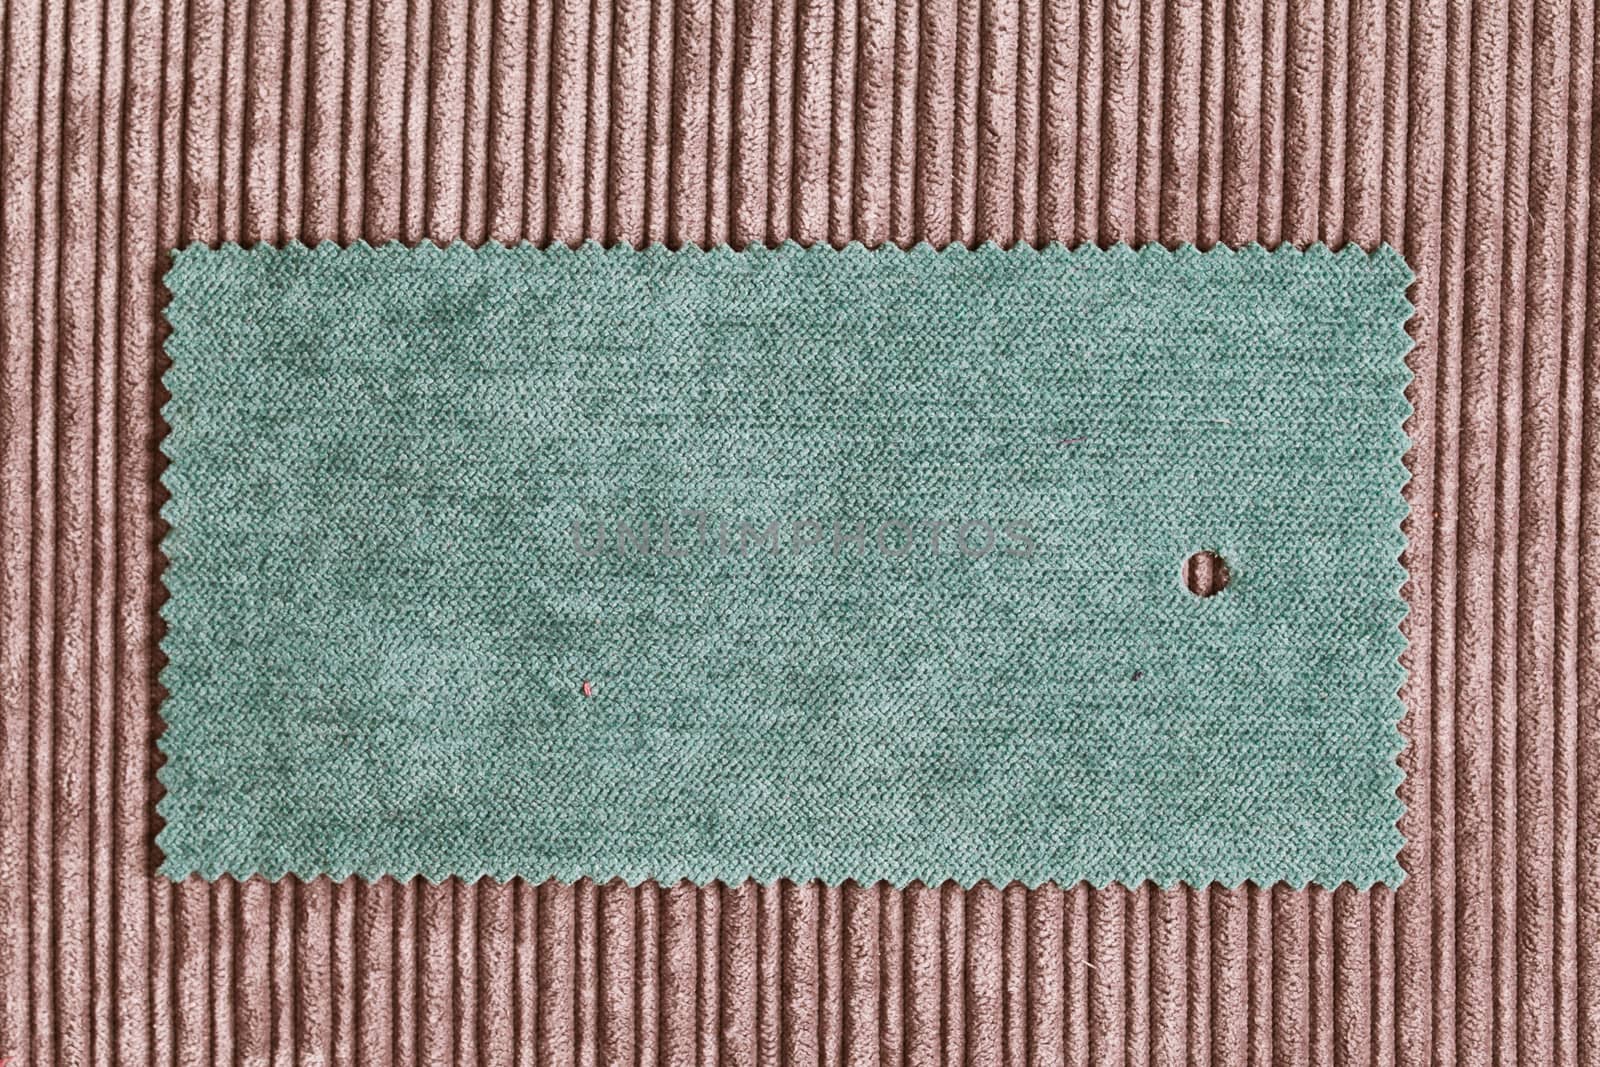 Fabric swatch by trgowanlock